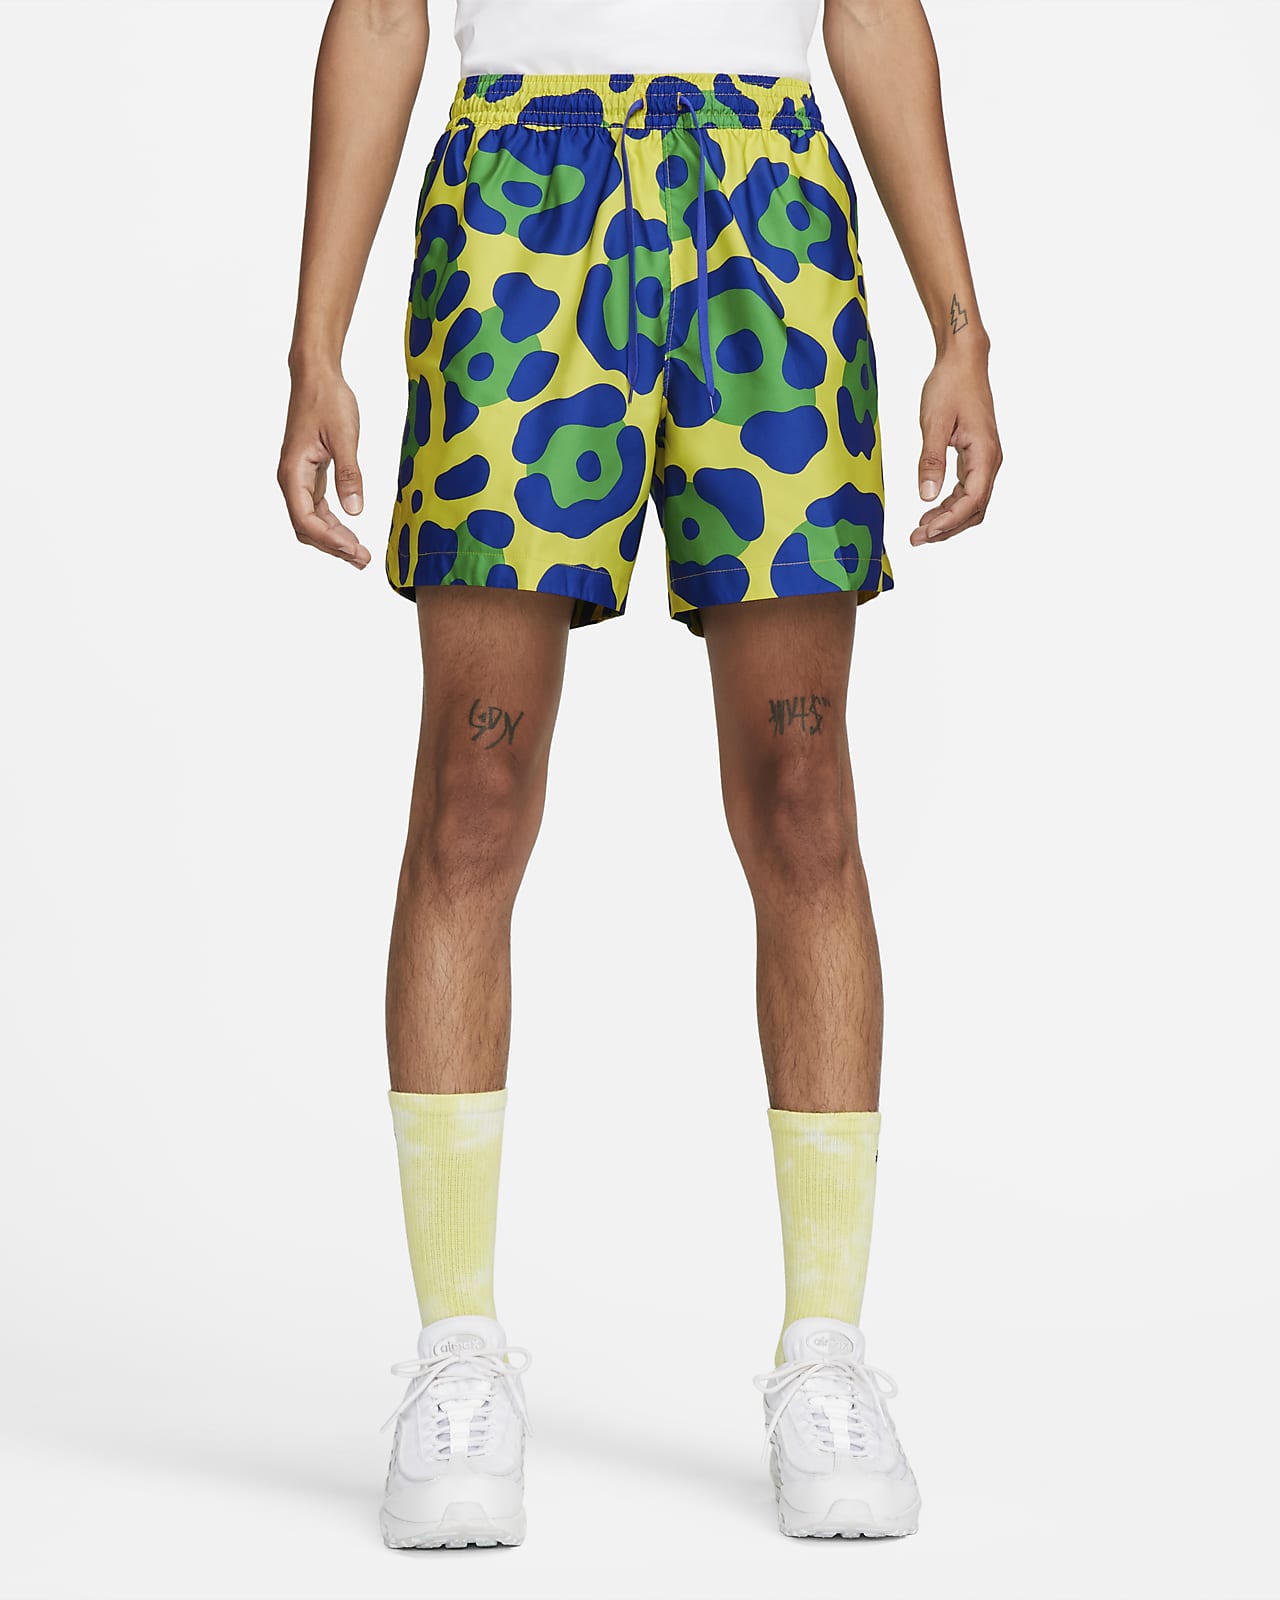 Brasil Men's Nike Dri-FIT Woven Football Shorts